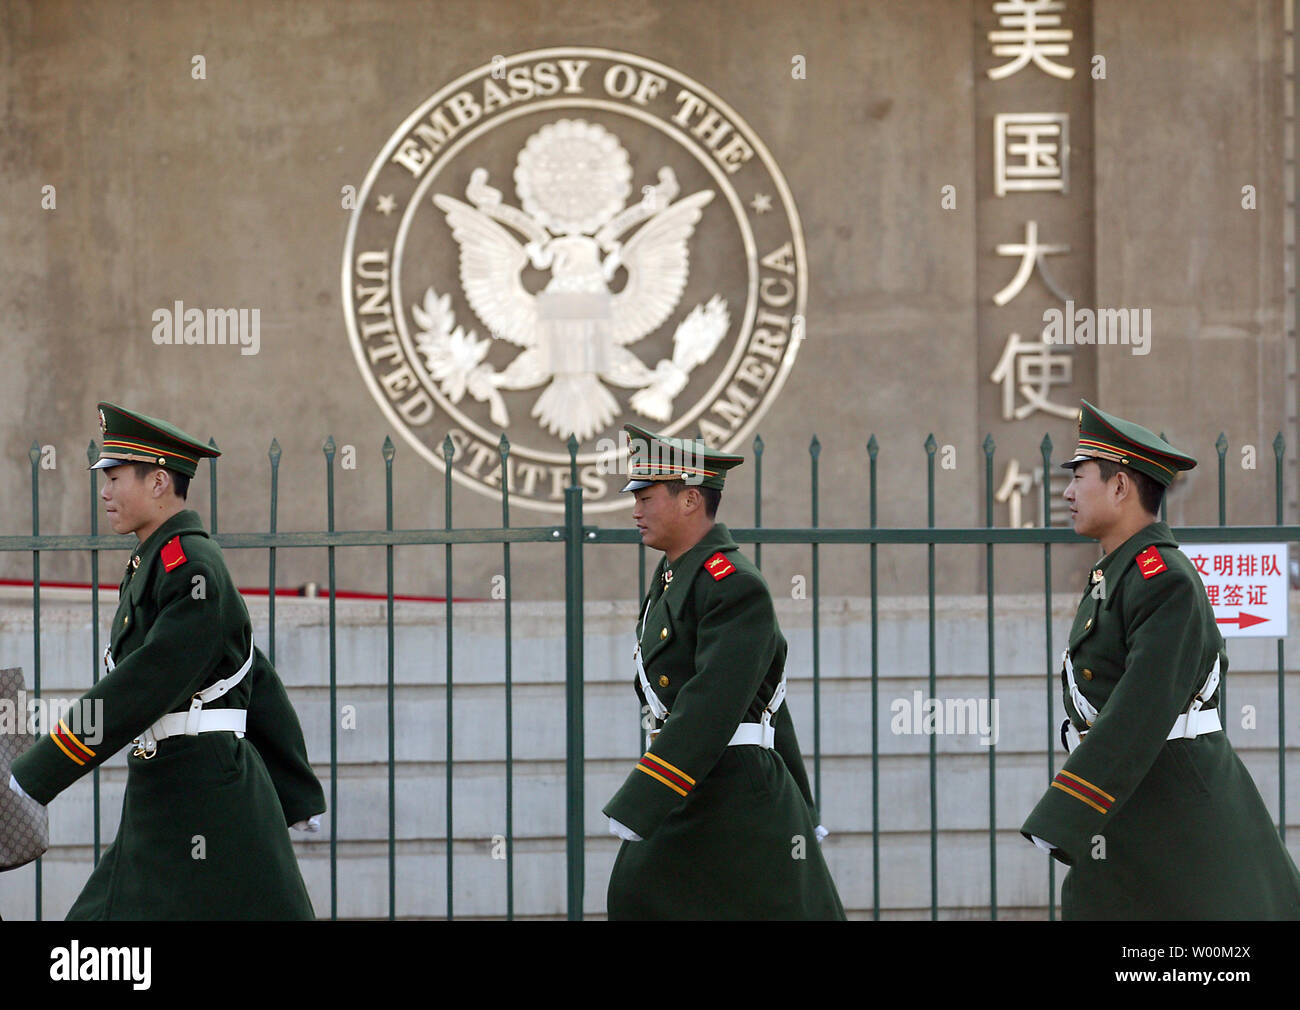 Chinesische Soldaten marschieren hinter der neuen amerikanischen Botschaft in Peking am 29. März 2009. Chinas Militär mehr ist die Entwicklung ballistischer und Anti-Schiffs-Raketen, die Hifting die Machtverhältnisse in der Region und könnte China sichere Ressourcen Hilfe oder territorialen Streitigkeiten beizulegen, einem Bericht des Pentagon freigegeben sagte letzte Woche. (UPI Foto/Stephen Rasierer) Stockfoto